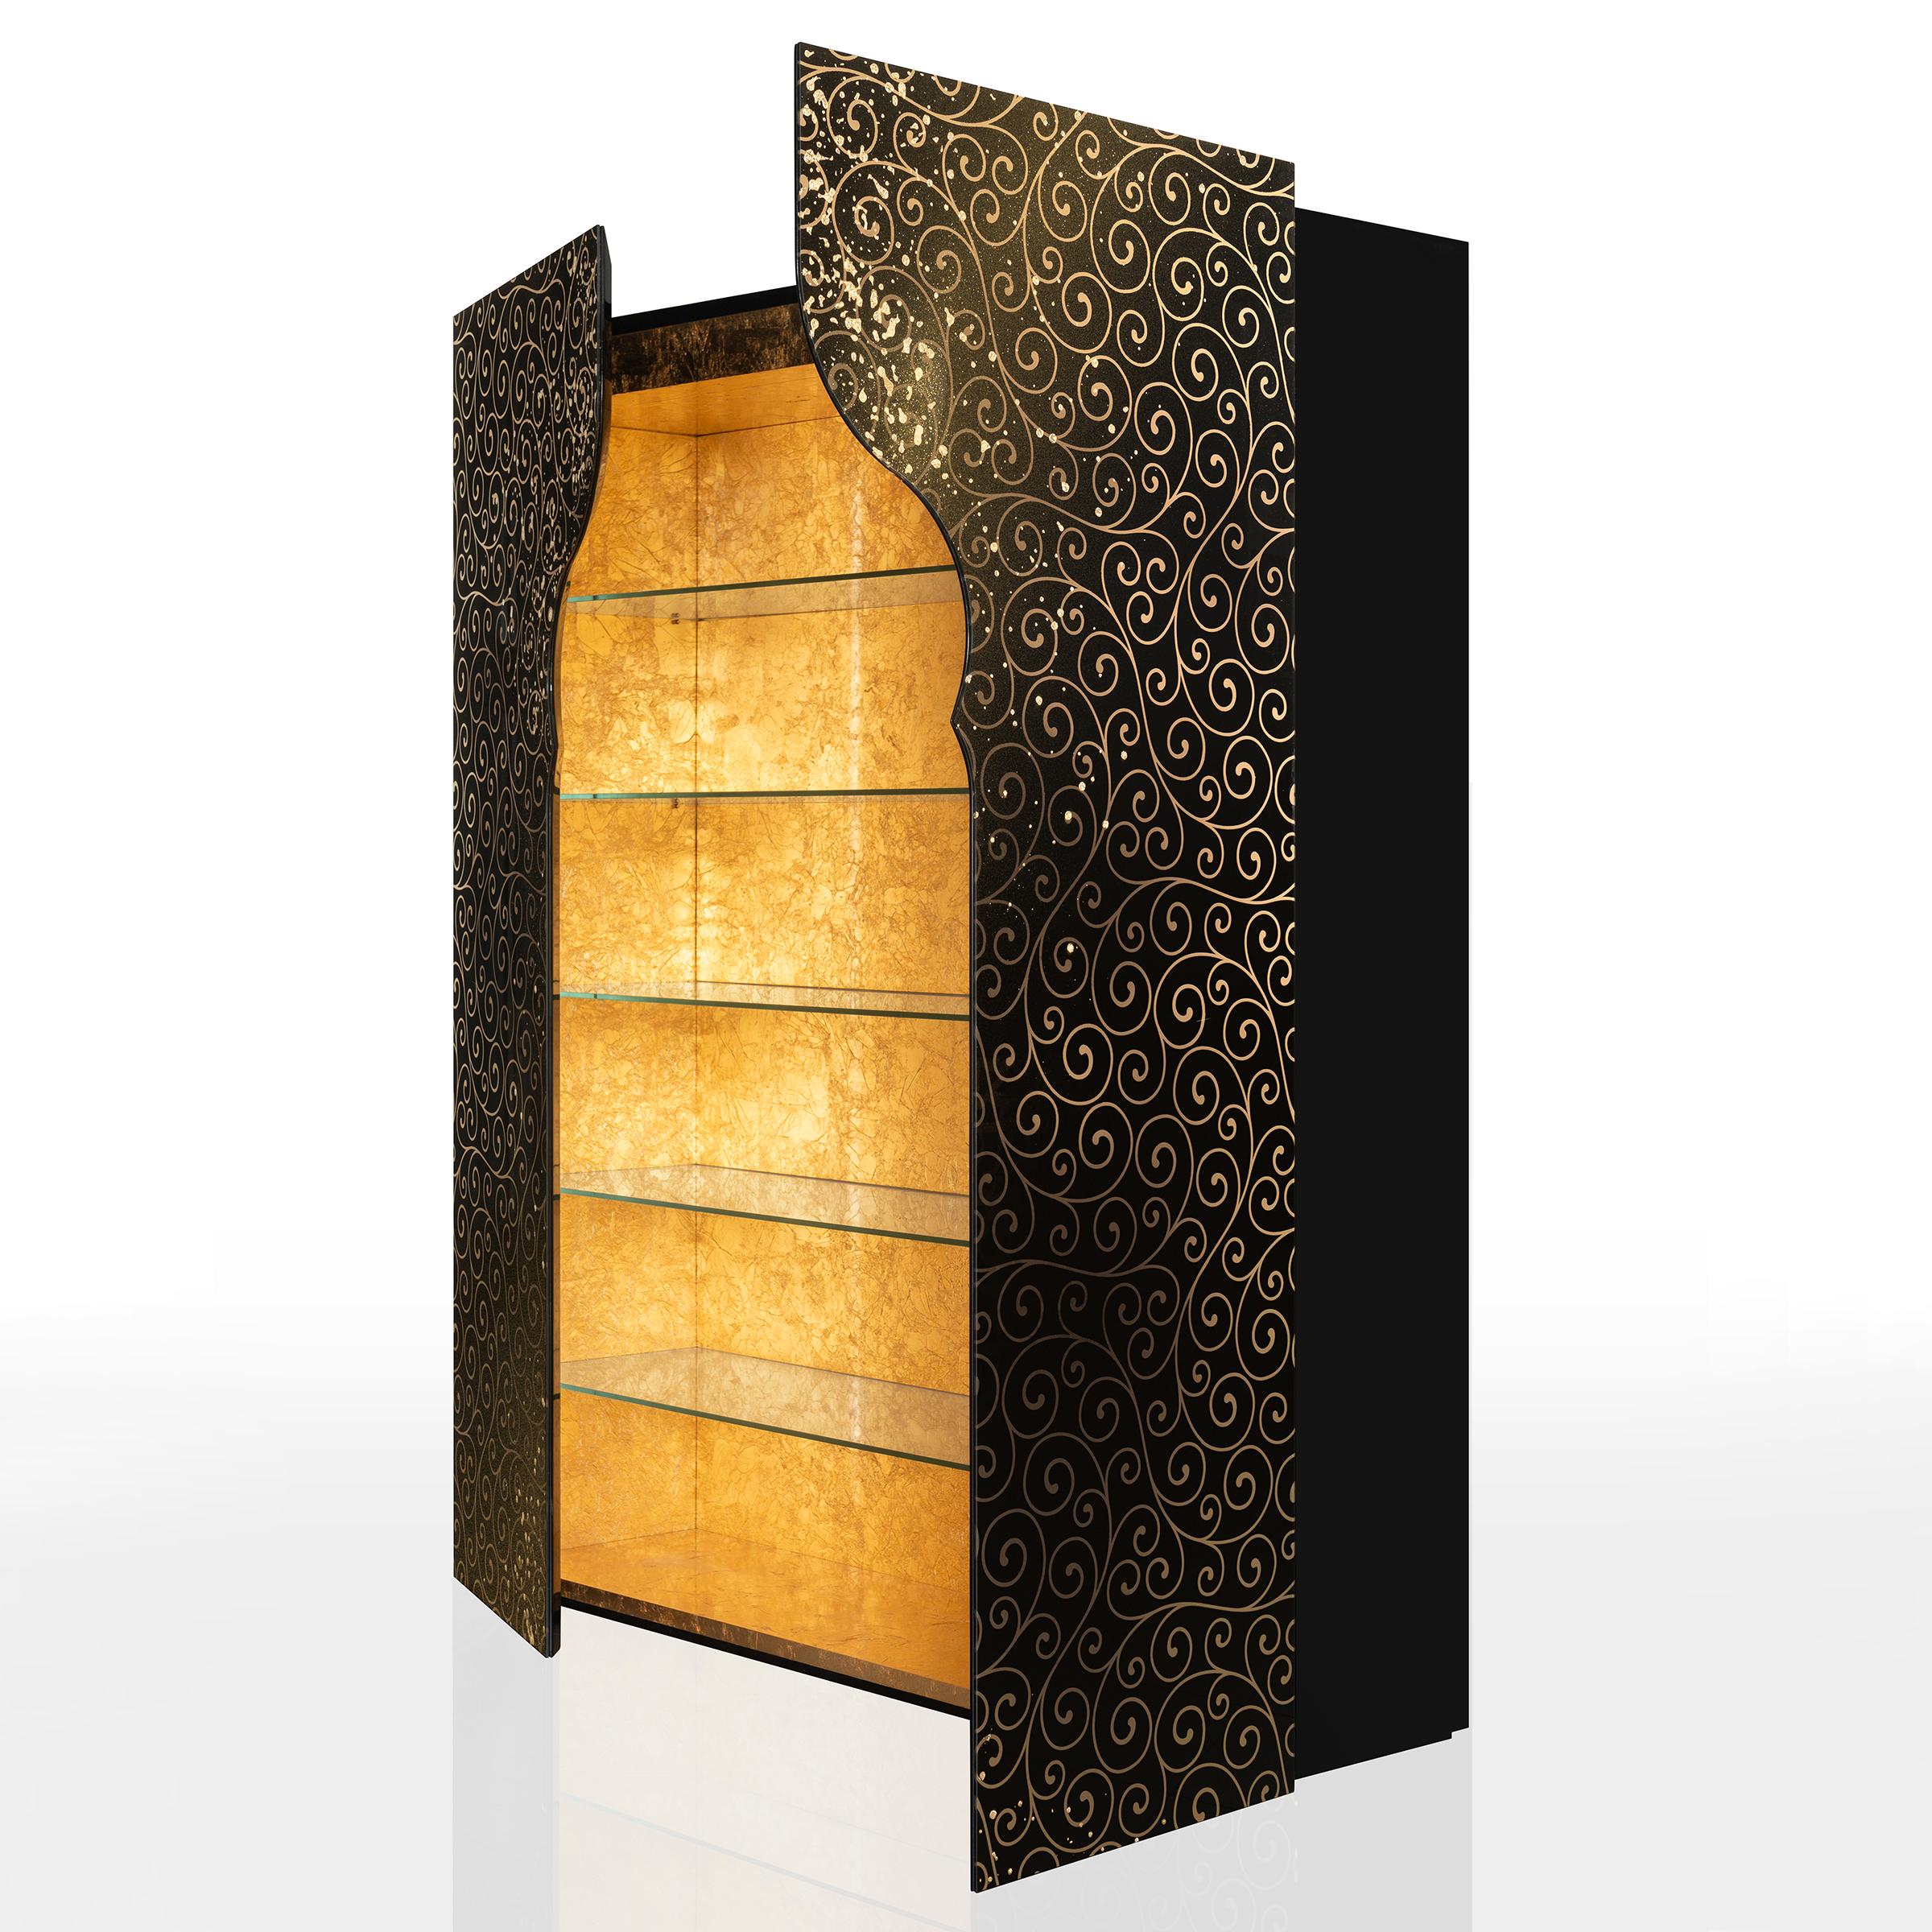 Armoire étagères Riyad avec structure de caisse en bois massif finition laquée noire,
avec 2 portes frontales en verre trempé façonné extra-clair, épaisseur 6mm, avec
fond noir décoré de feuilles d'or par sablage artisanal
et avec de la poudre dorée